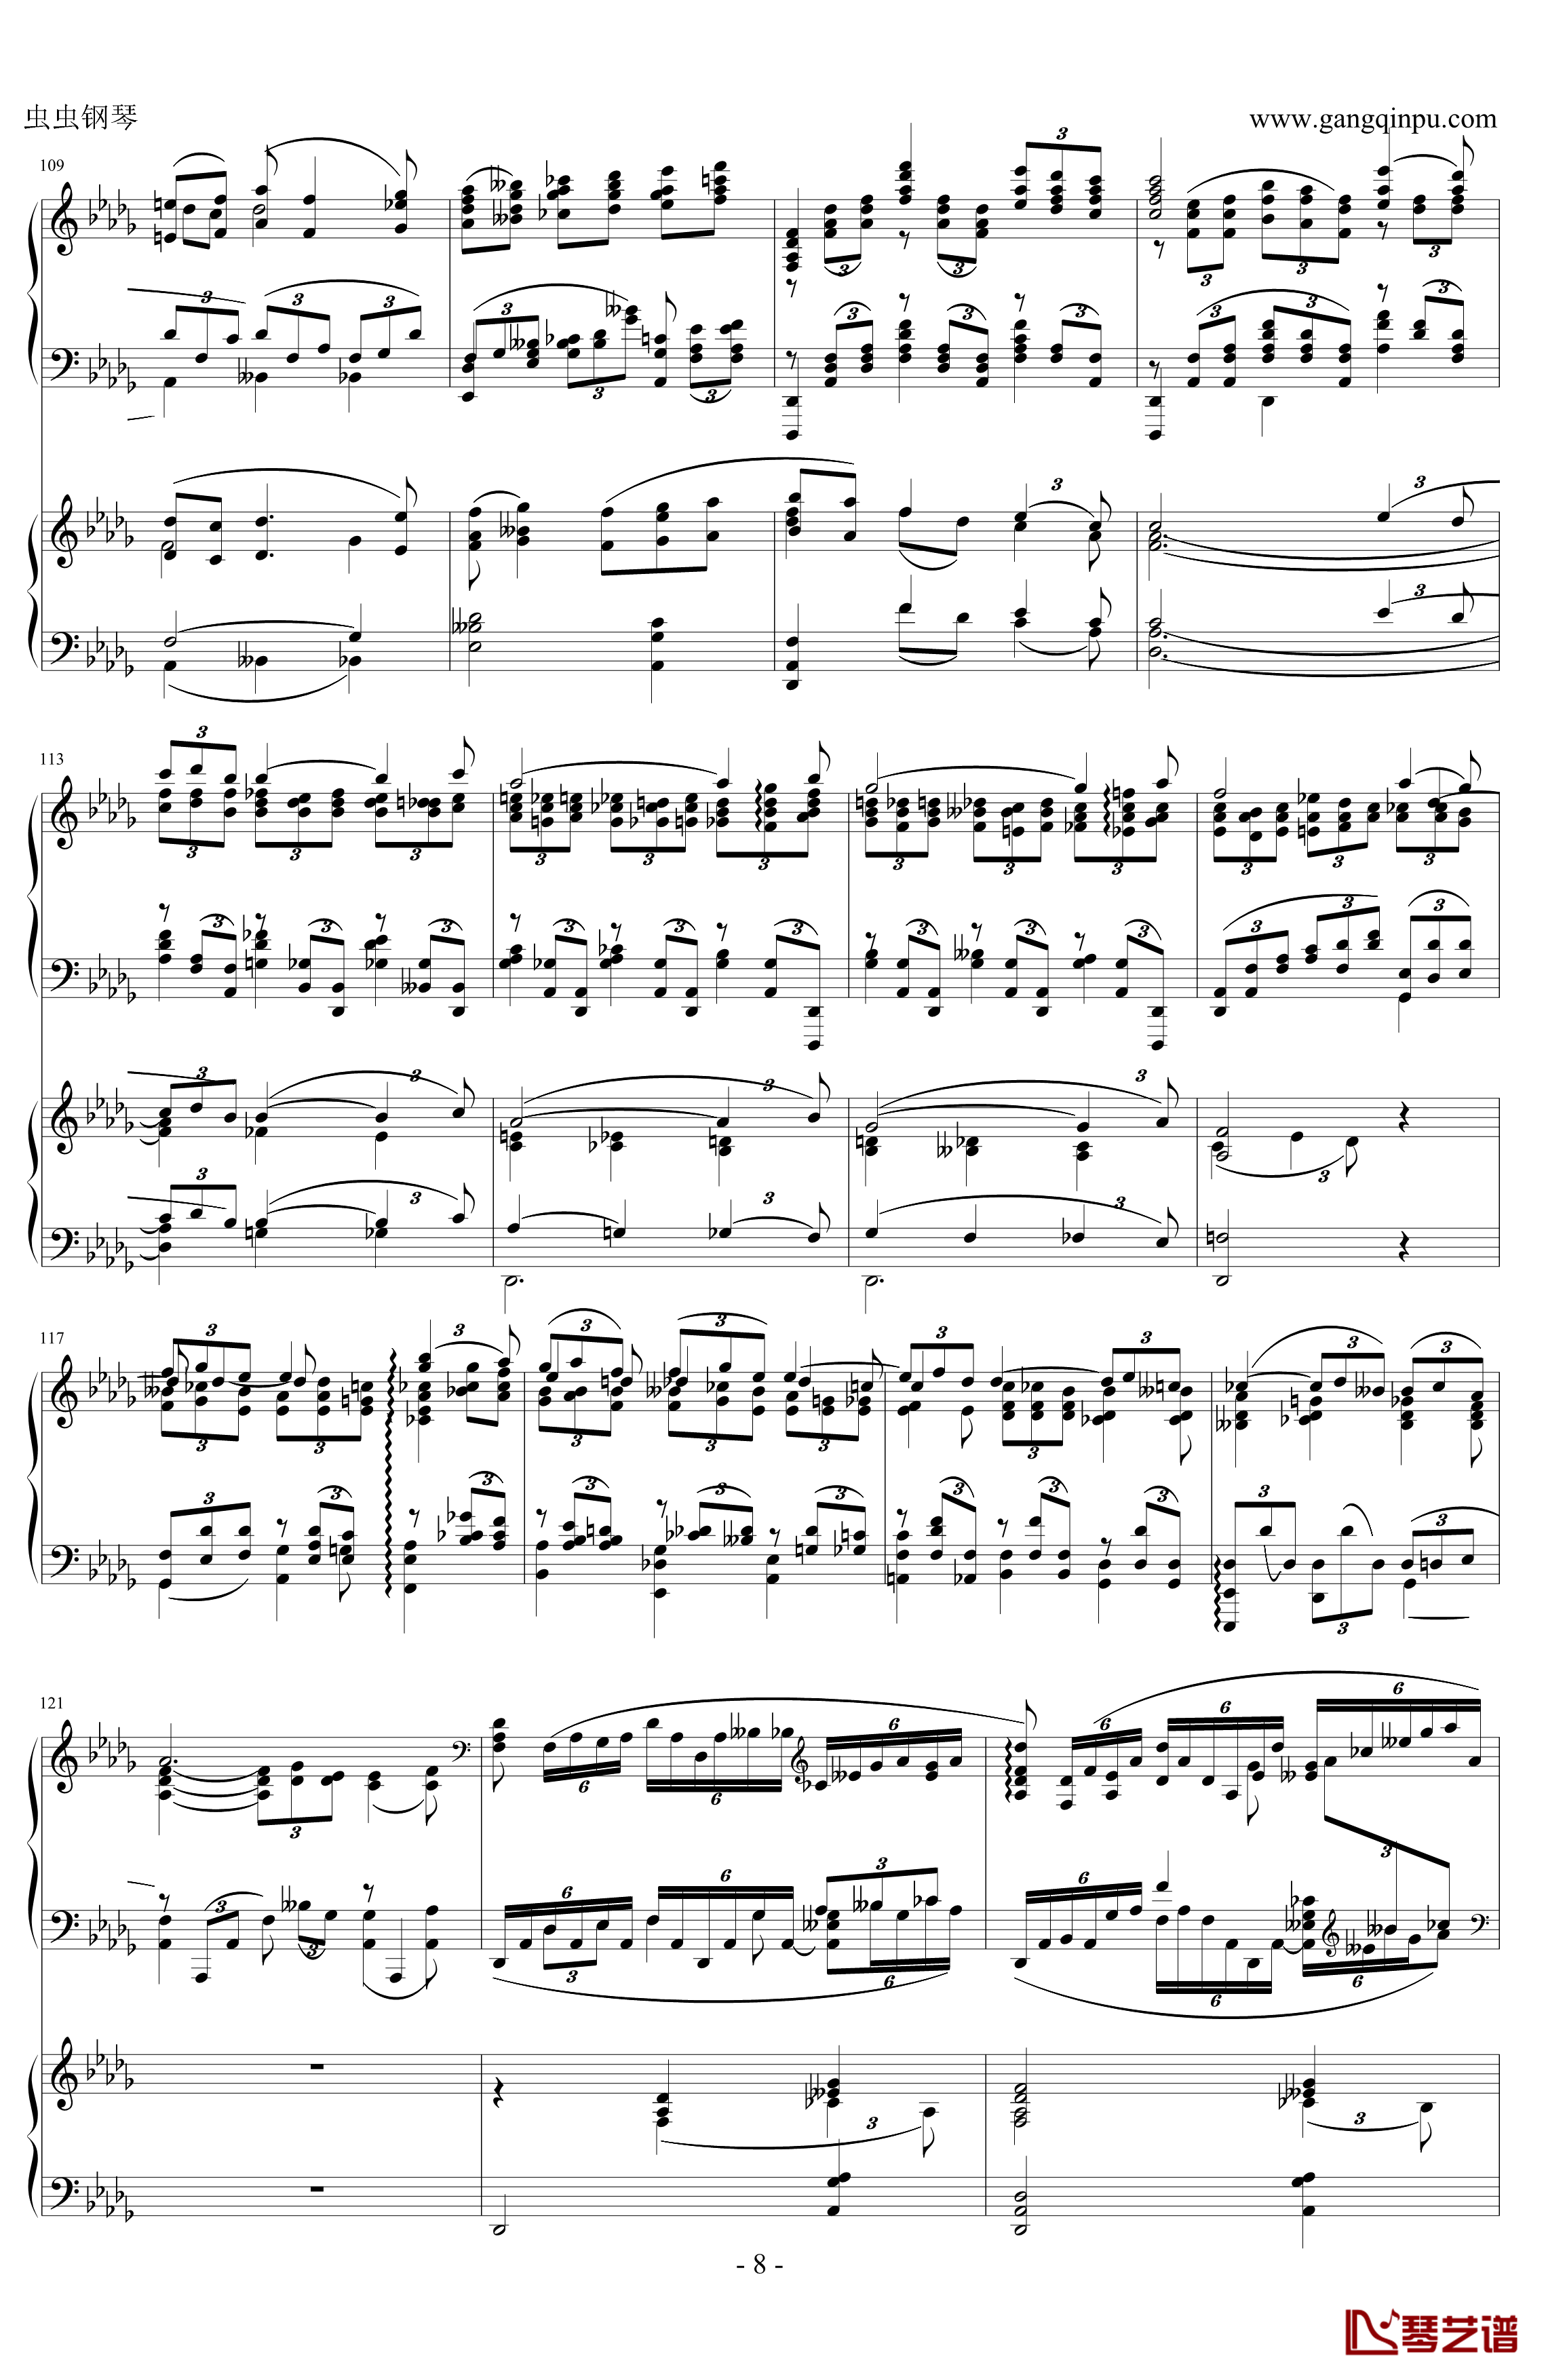 拉赫玛尼诺夫d小调第三钢琴协奏曲钢琴谱 第二乐章-拉赫马尼若夫8